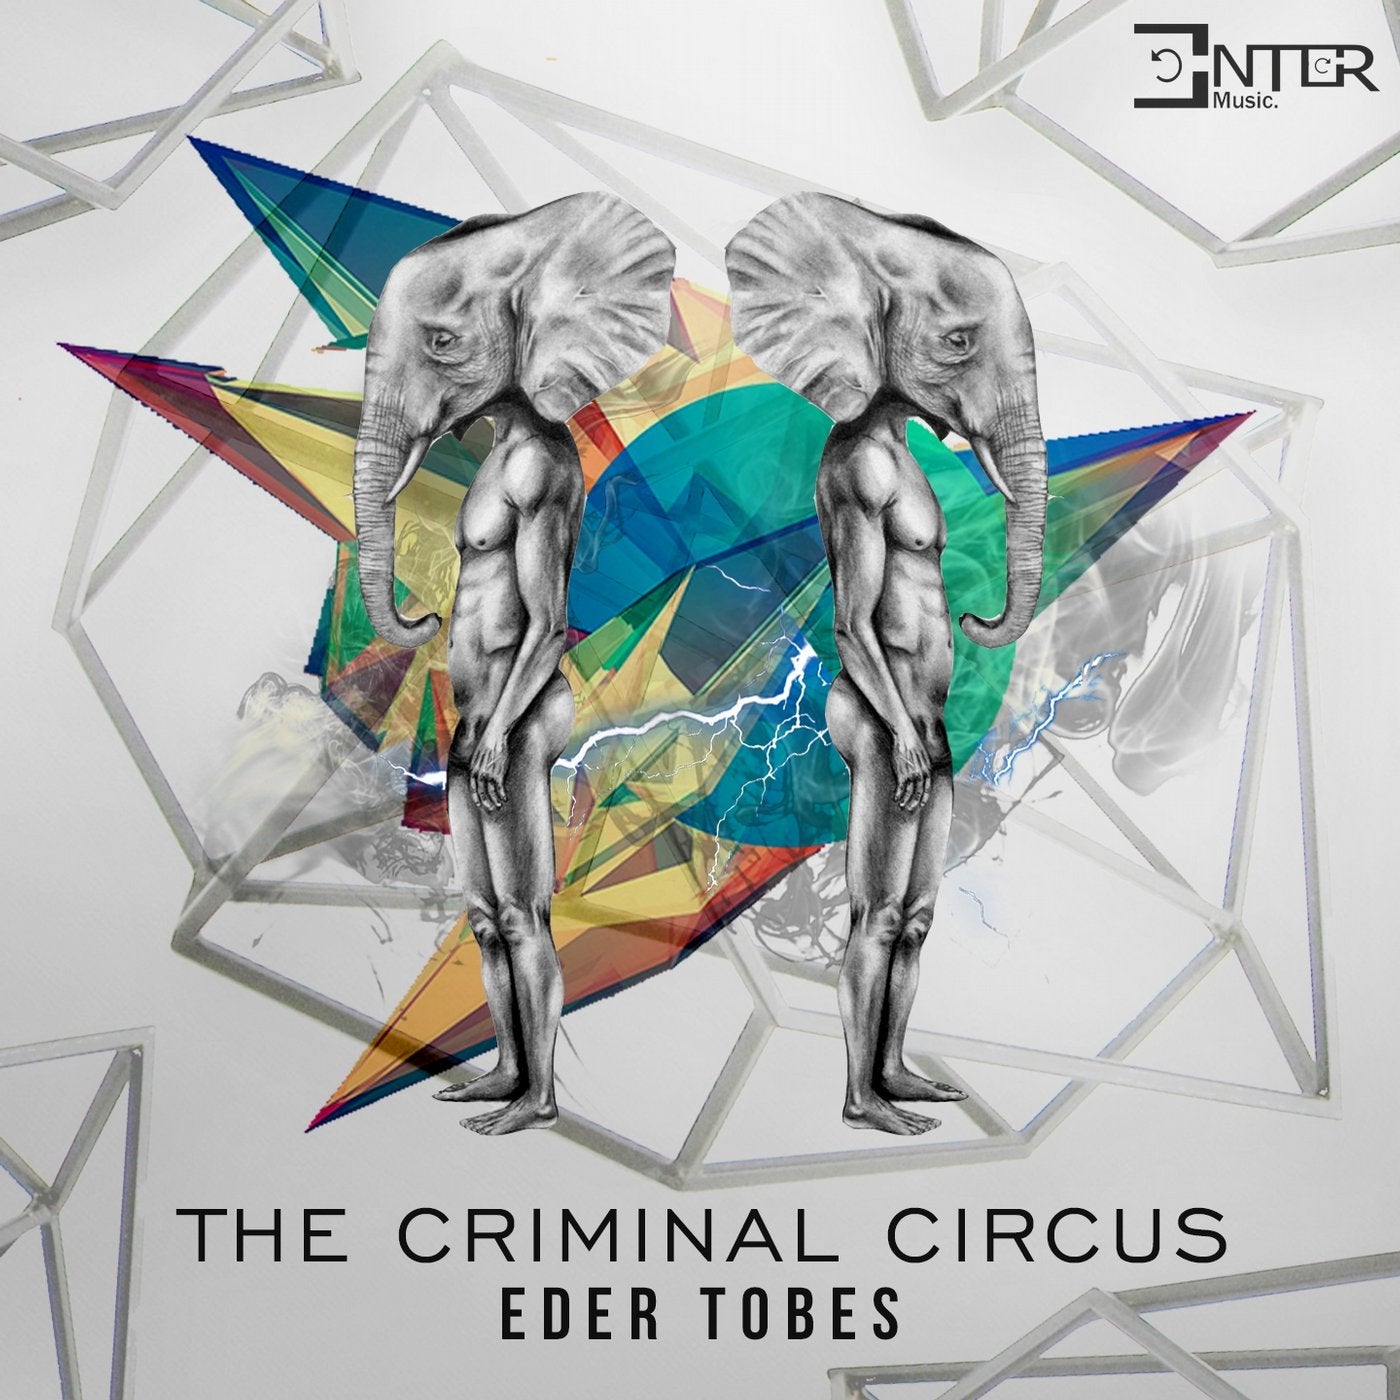 The Criminal Circus